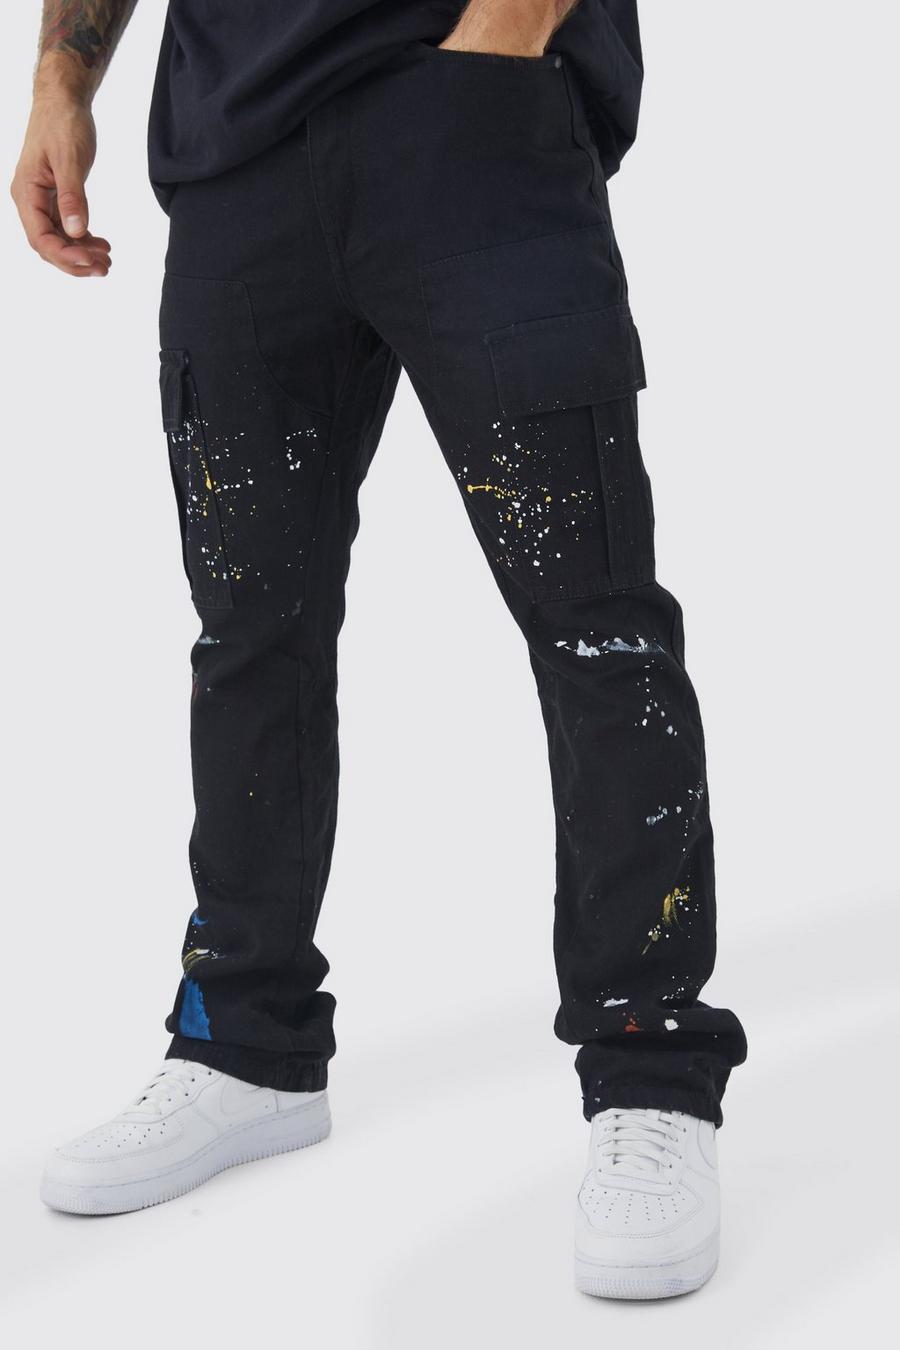 Pantaloni Cargo Slim Fit a zampa con inserti e schizzi di colore, Black